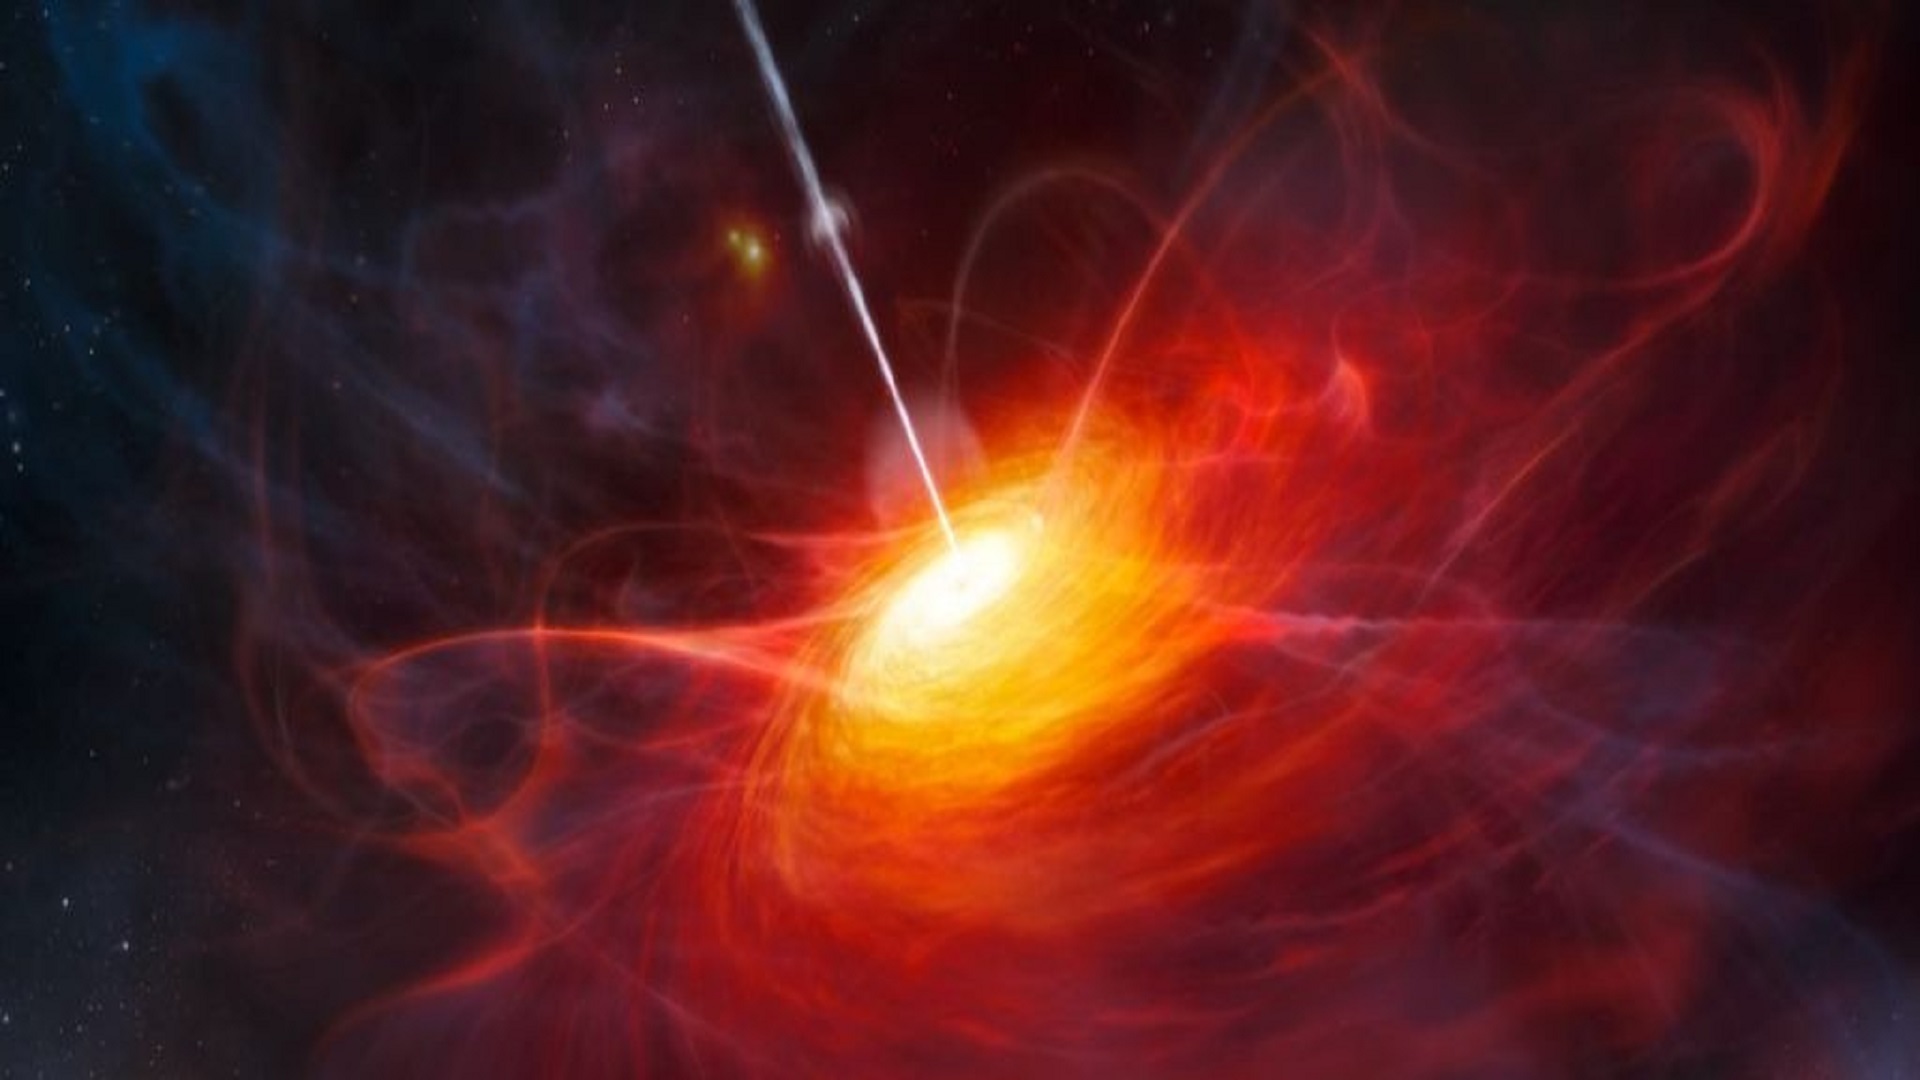 این سیاهچاله مرموز در زمان طلوع به وزن یک بیلیون خورشید است